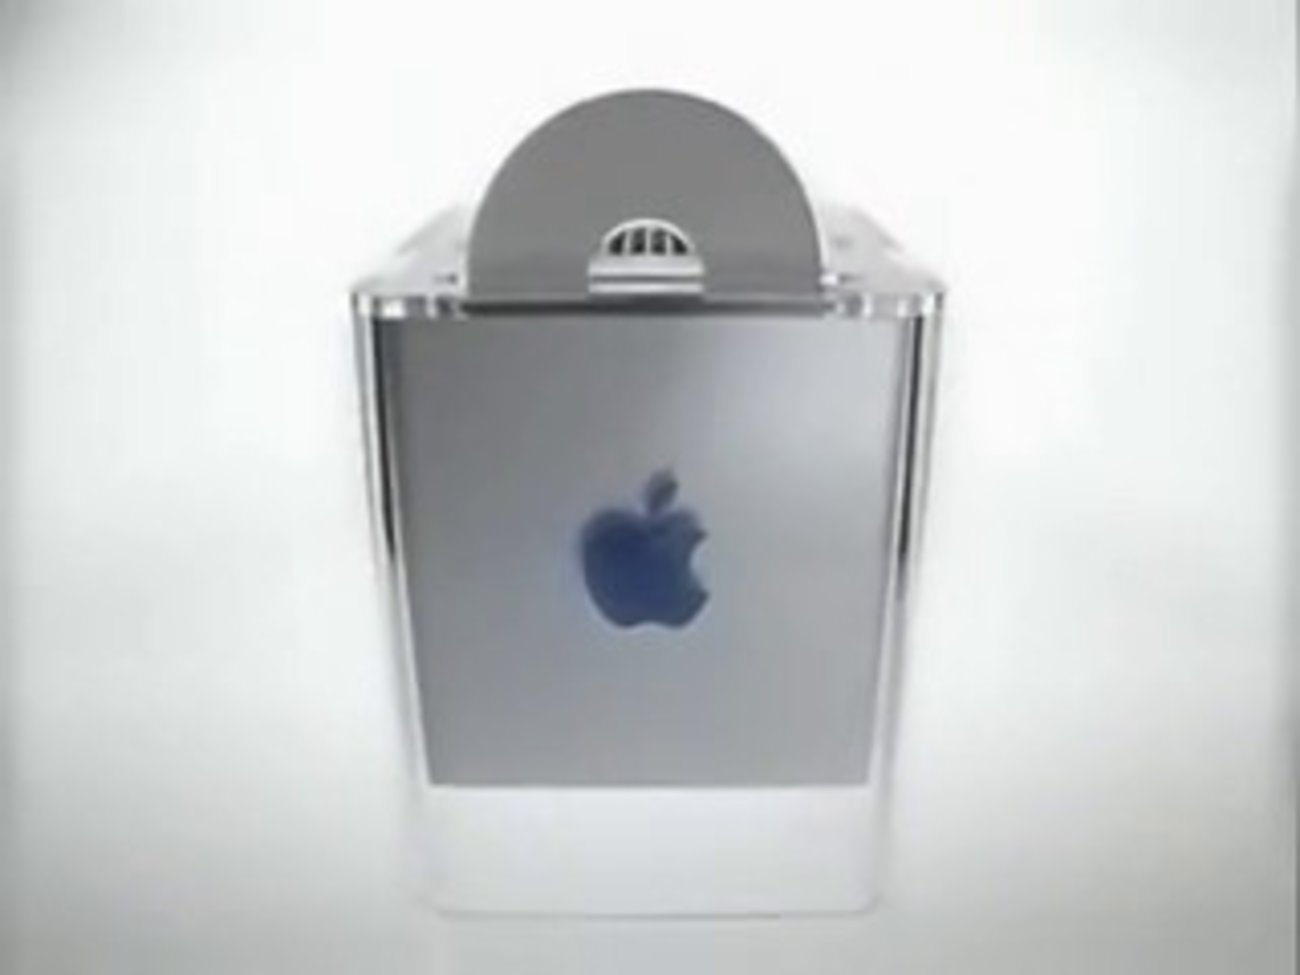 Apples Informationsvideo zum Power Mac G4 Cube (Jahr 2000)